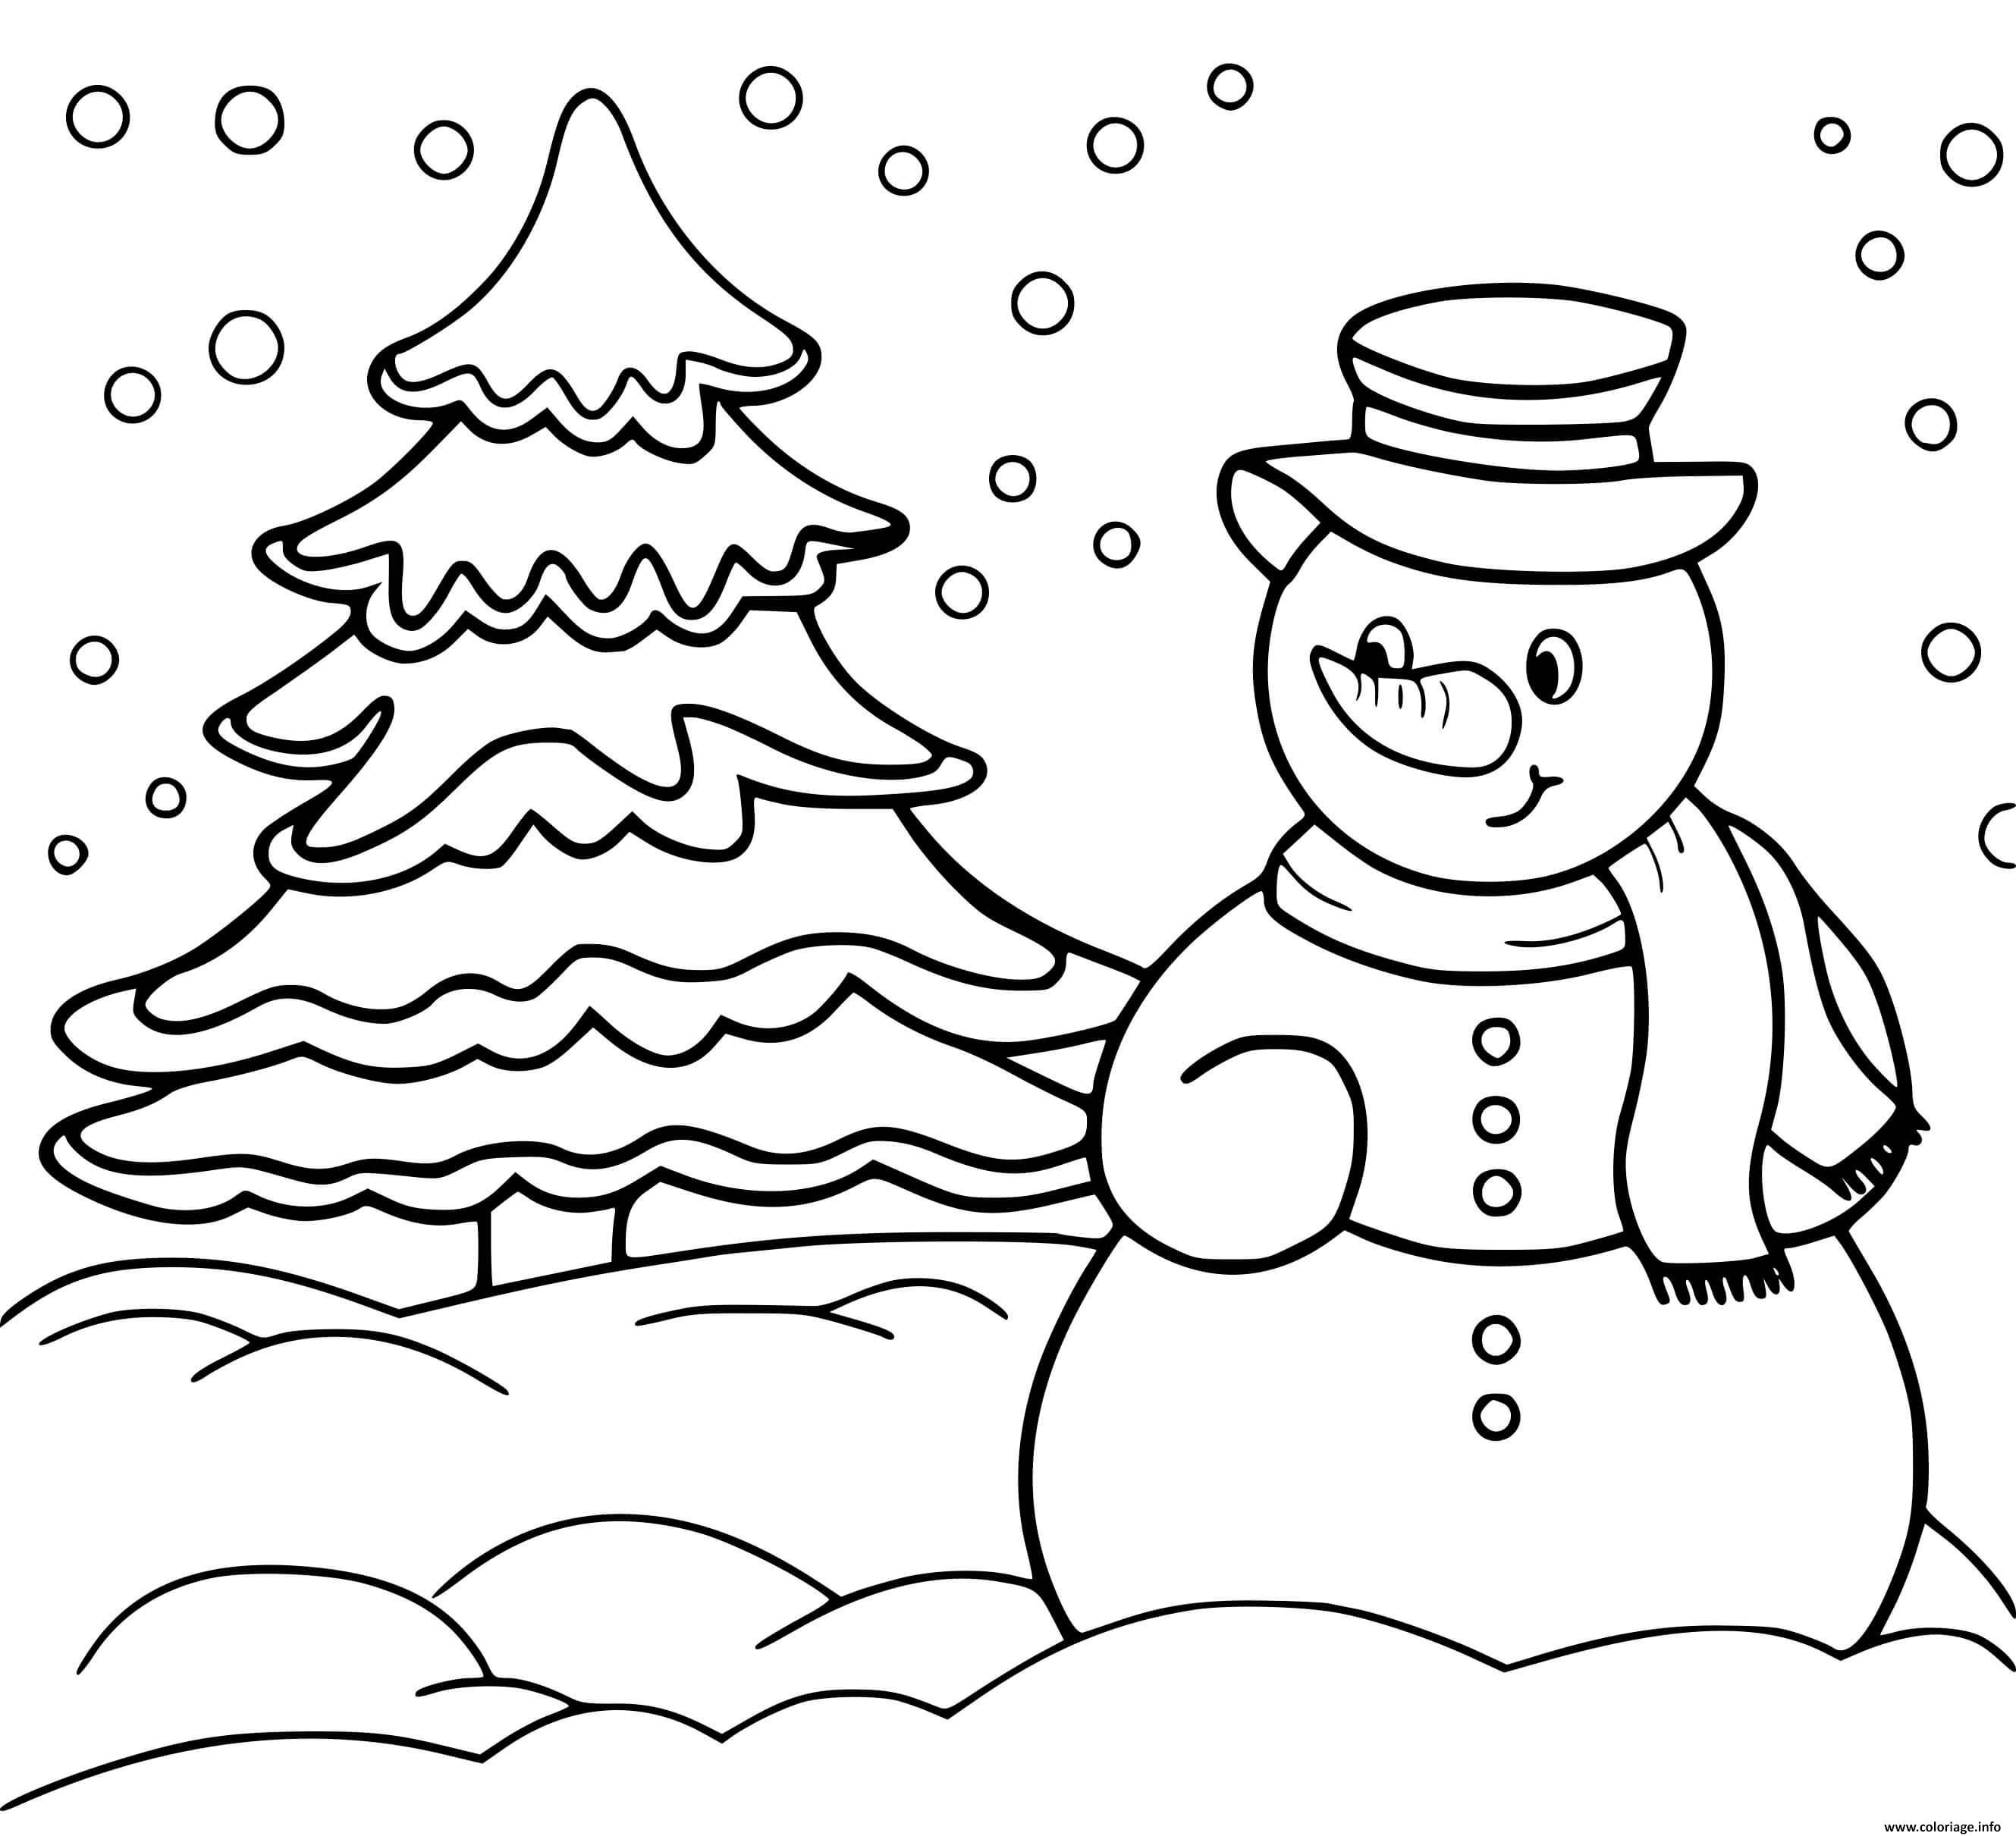 Раскраски снеговики. Зимние новогодние раскраски снеговиков